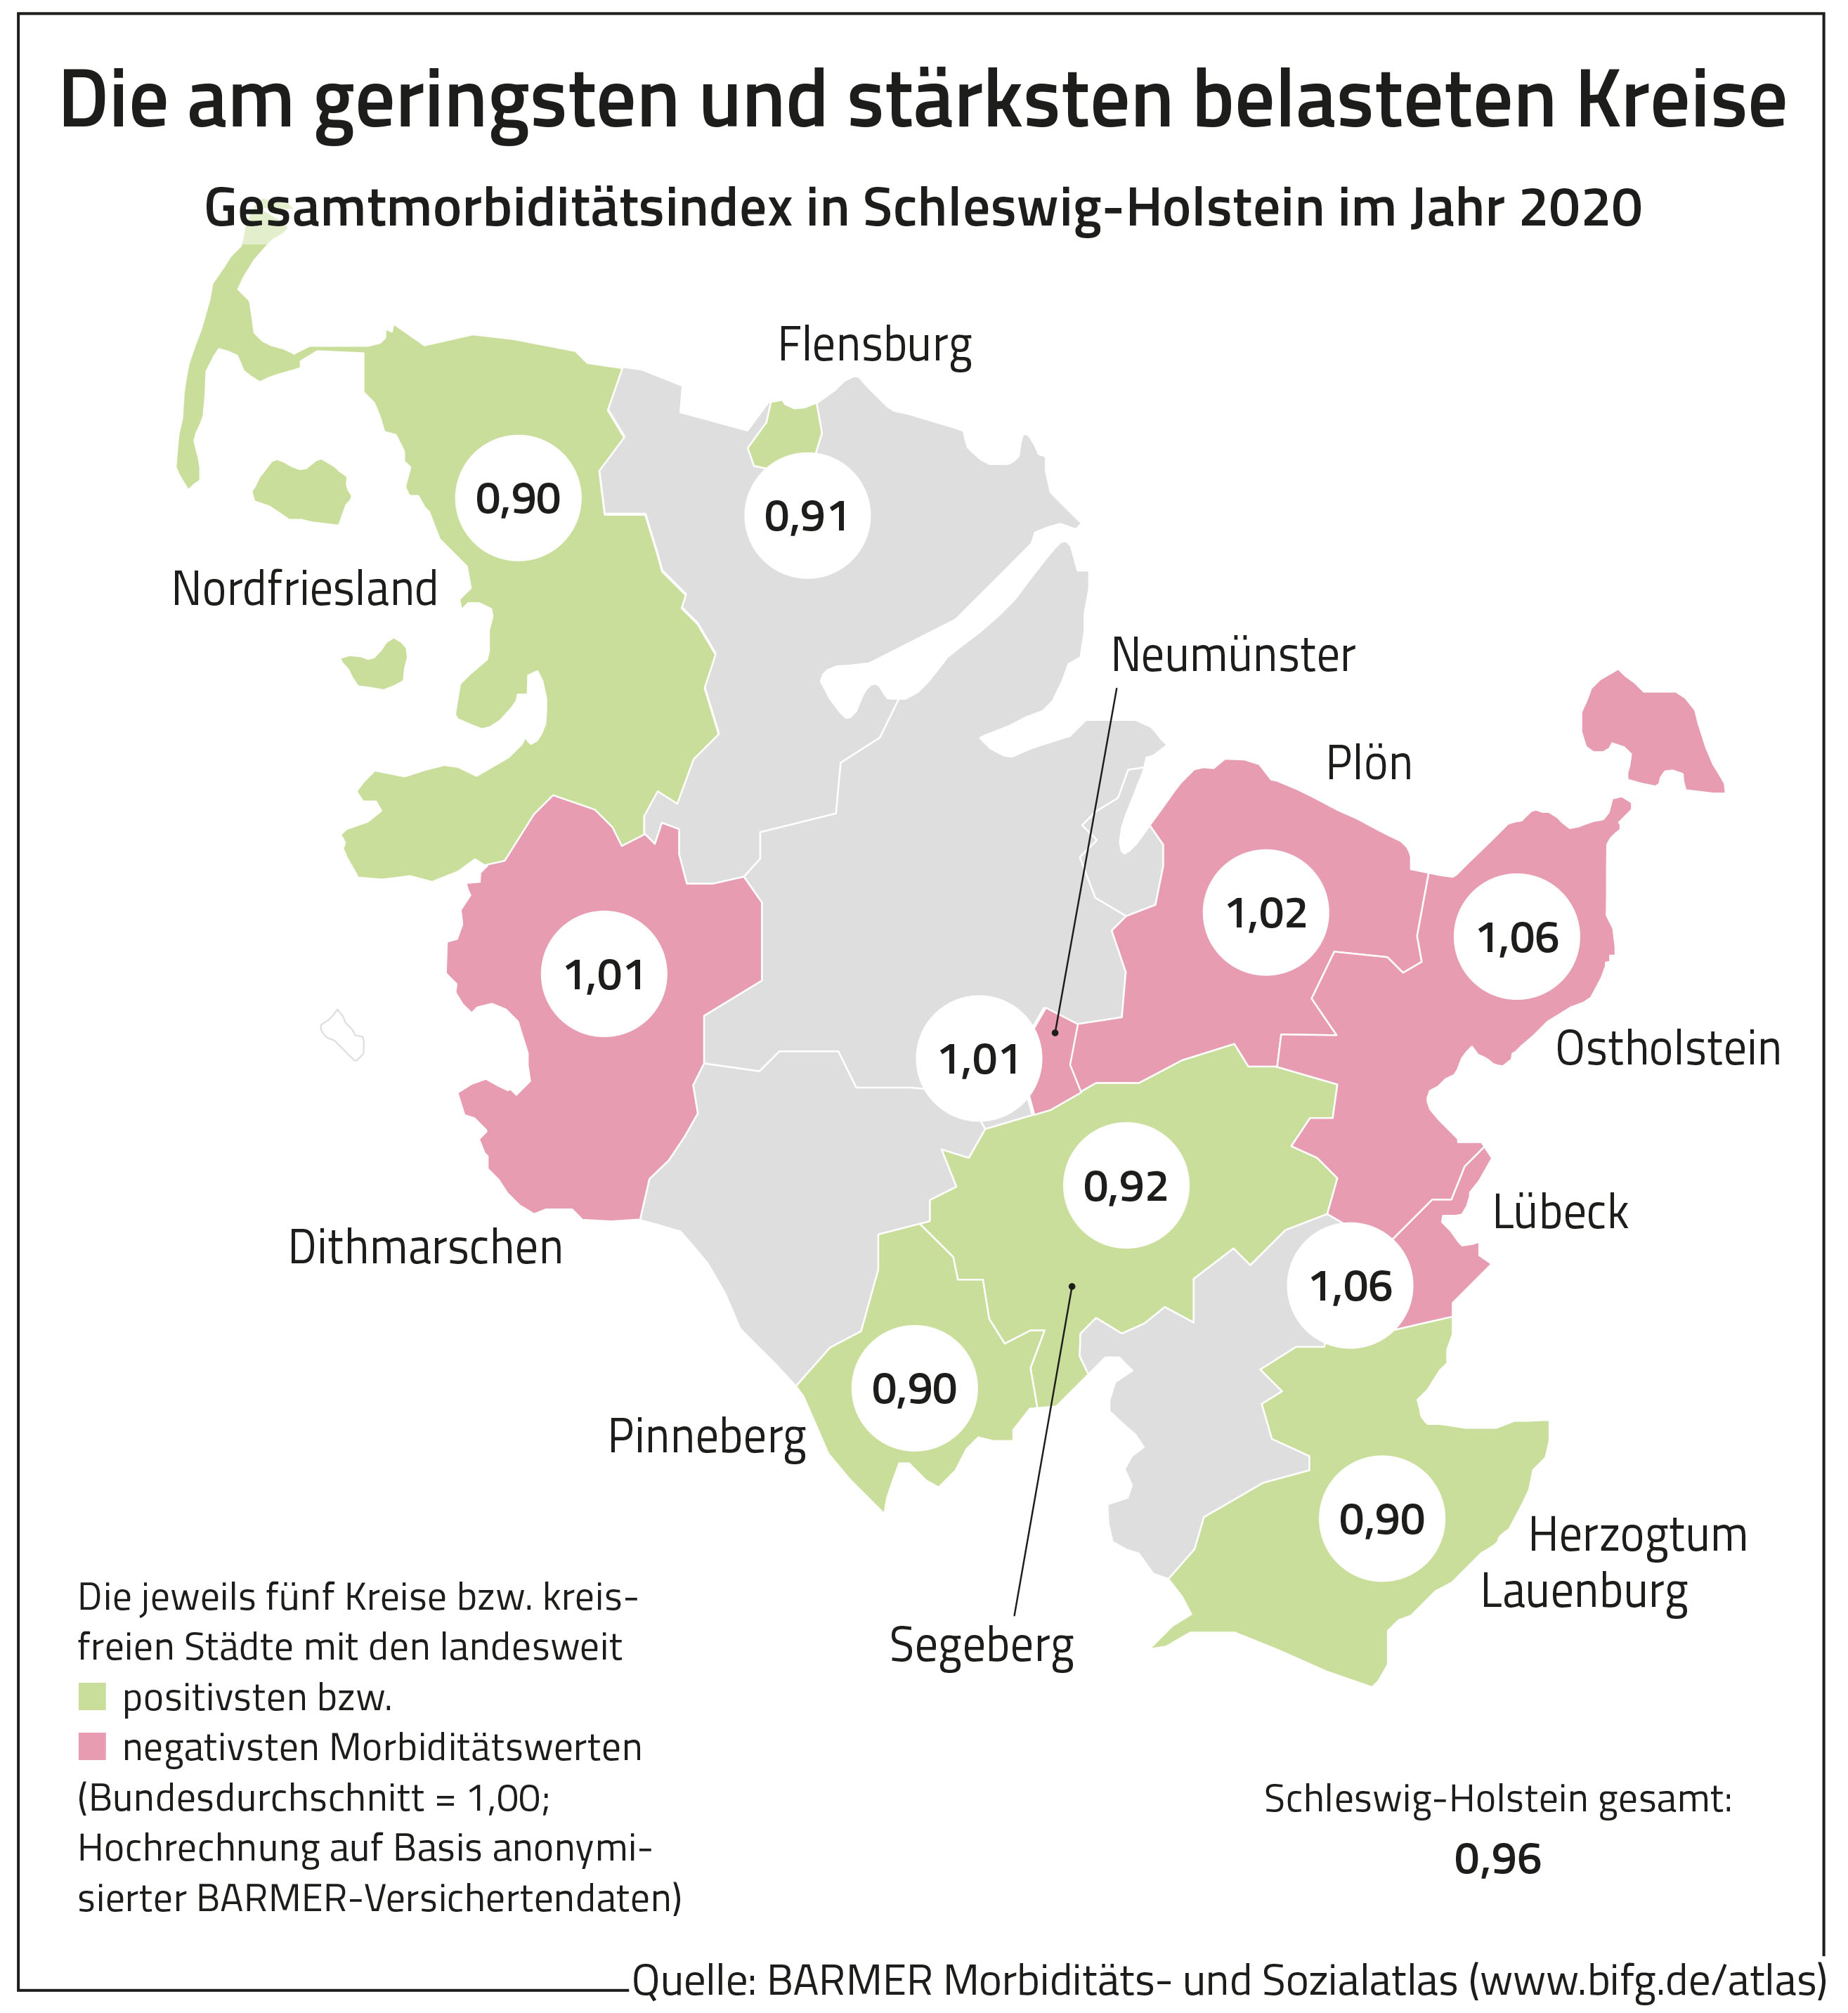 Die Grafik zeigt die am geringsten und stärksten belasteten Kreise in Schleswig-Holstein